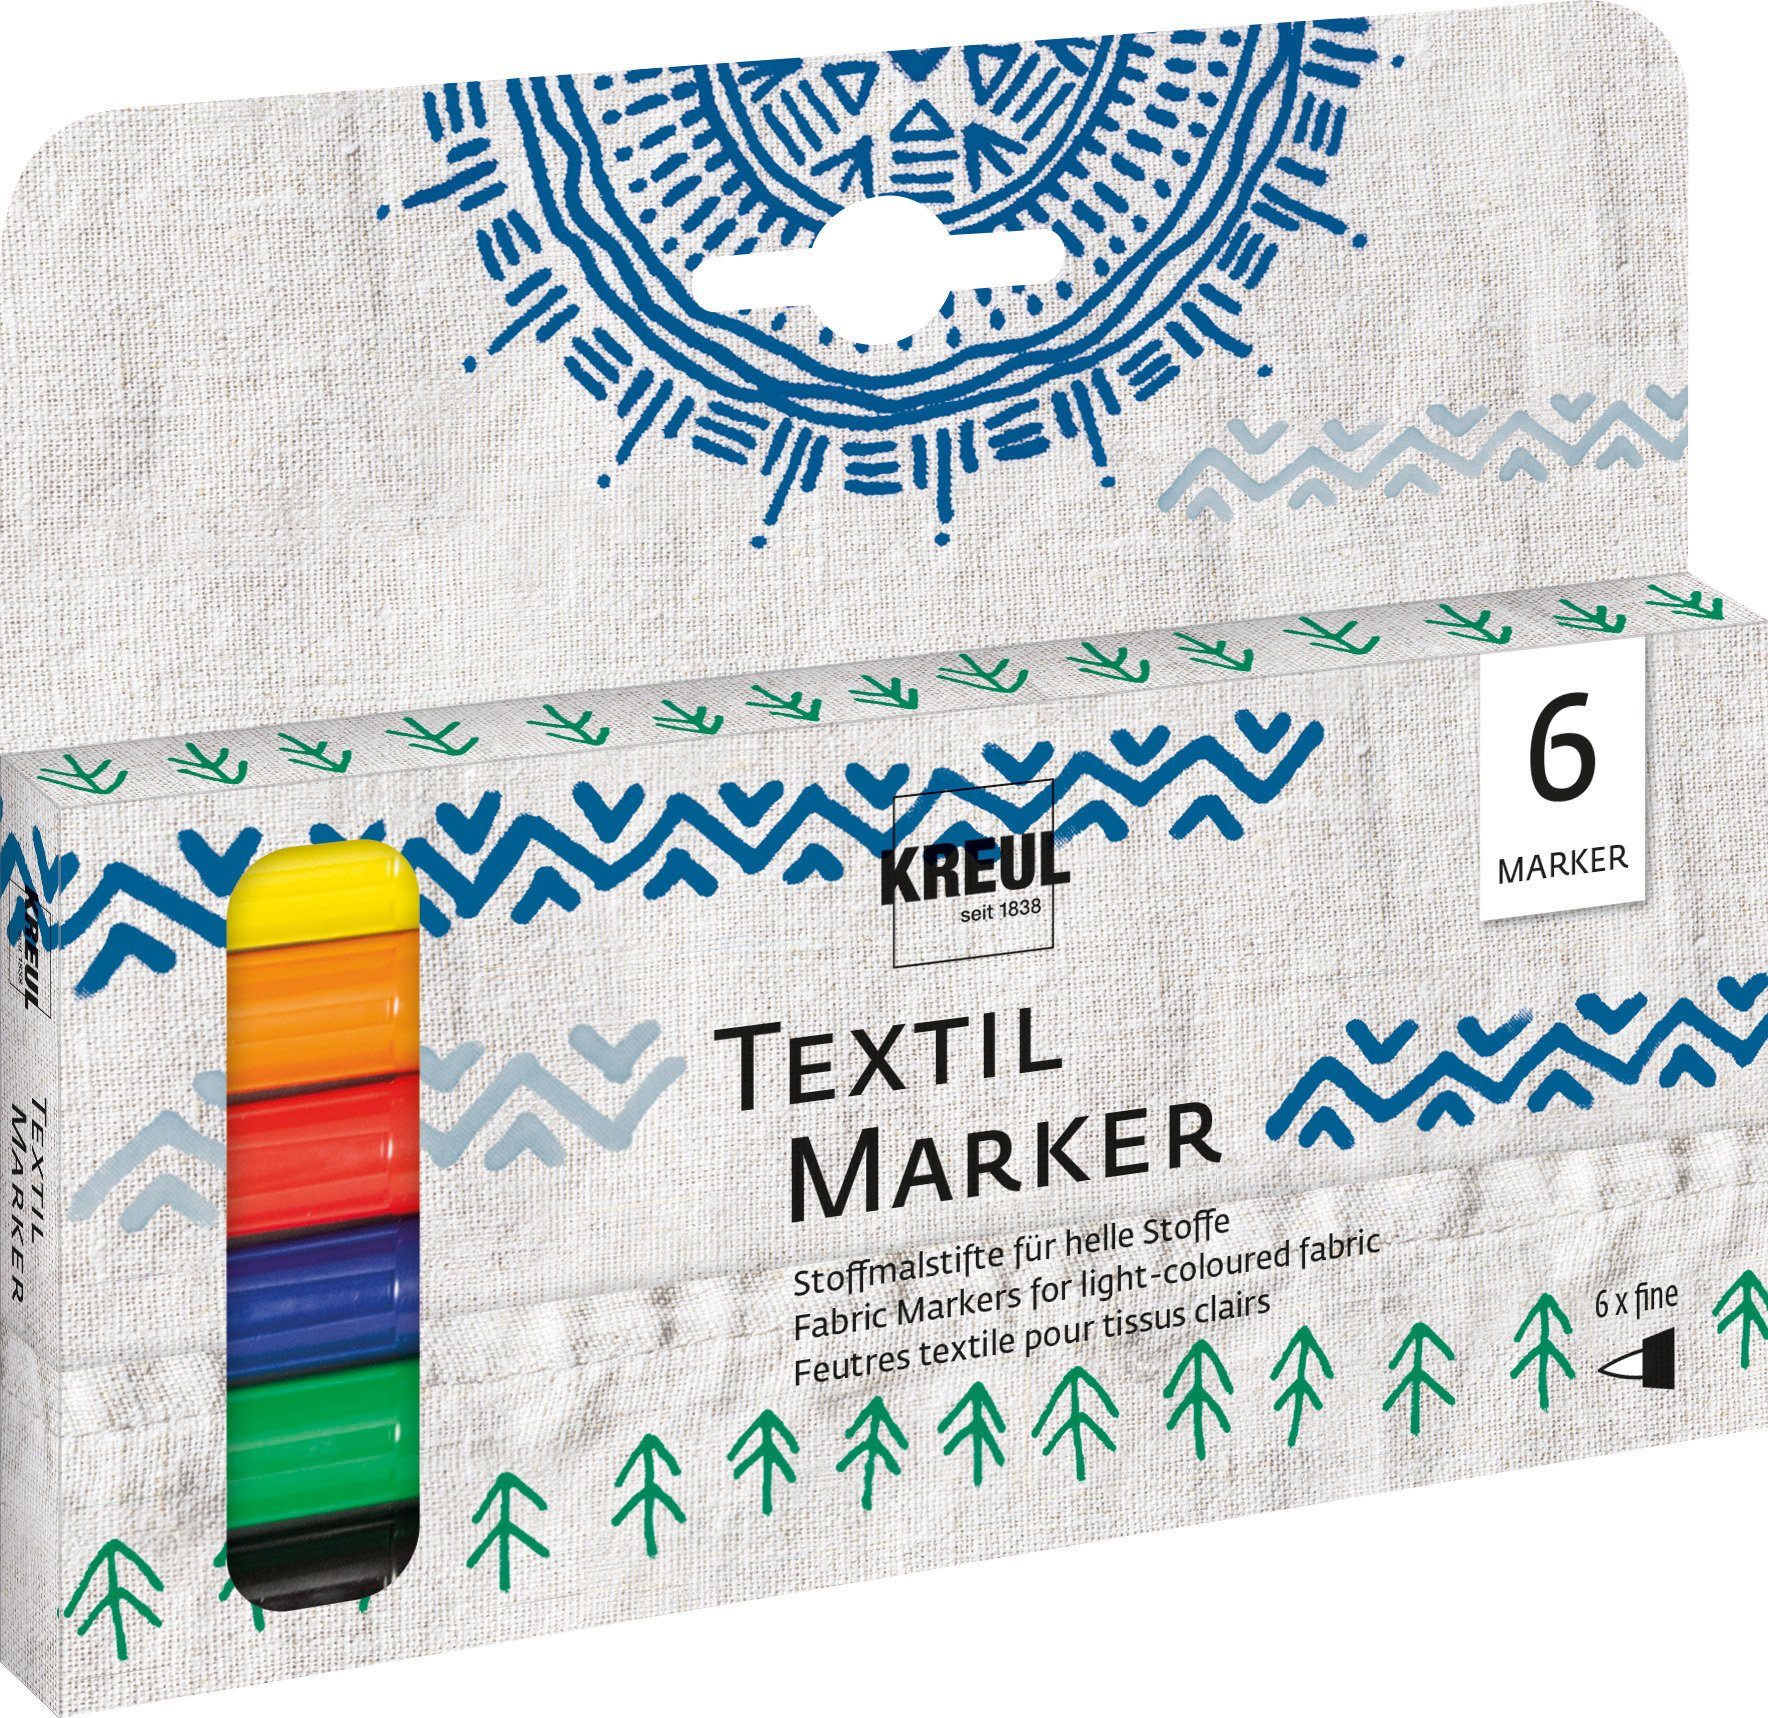 Textilmarker 6er-Set Kreul Textil Marker fine,